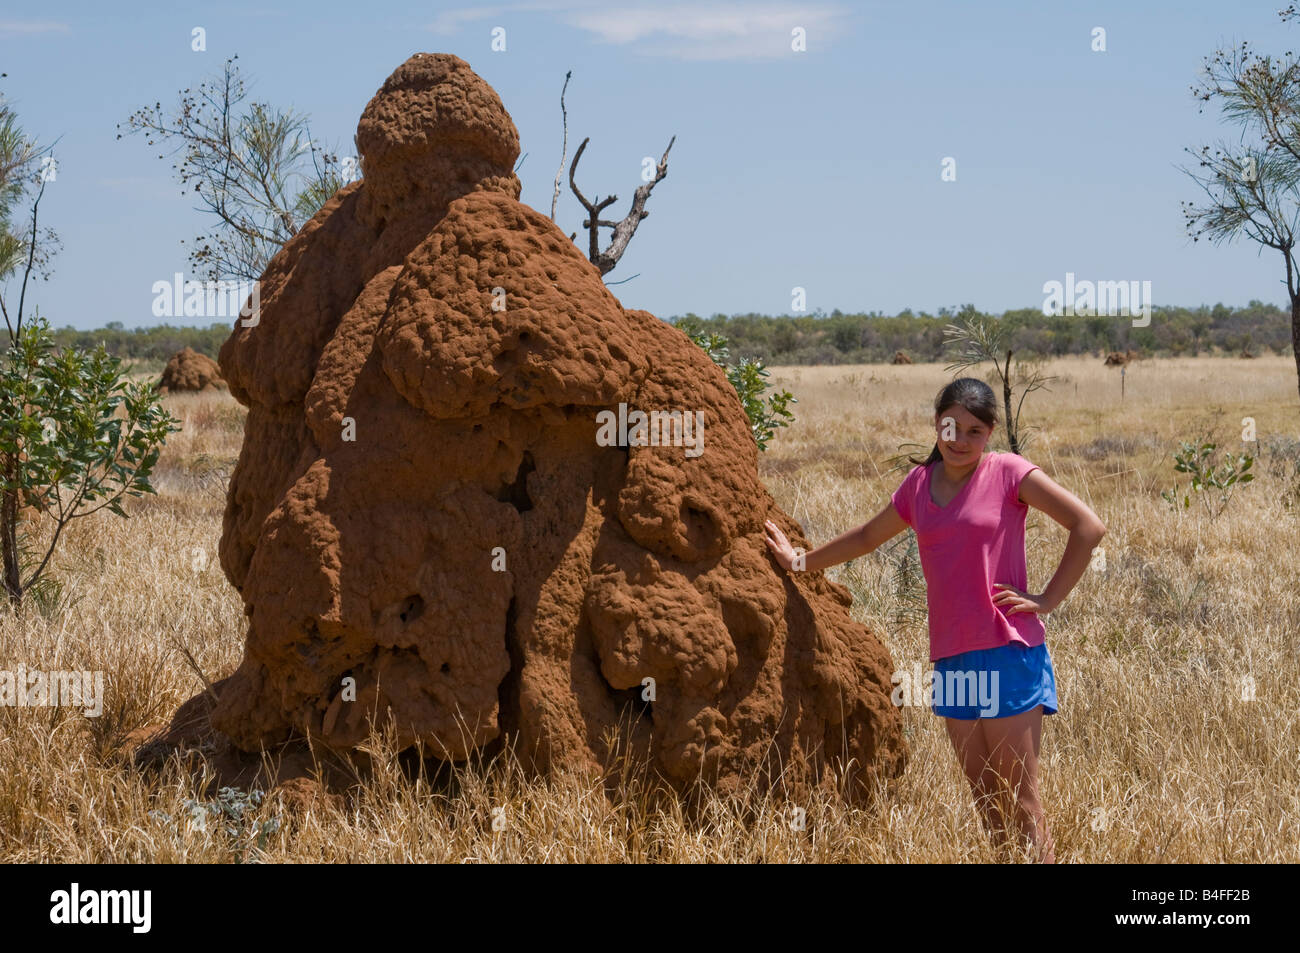 Jeune fille debout à côté d'un grand nid de termites pour montrer l'échelle près de Fitzroy Crossing dans la région de Kimberley, de l'Australie Occidentale Banque D'Images